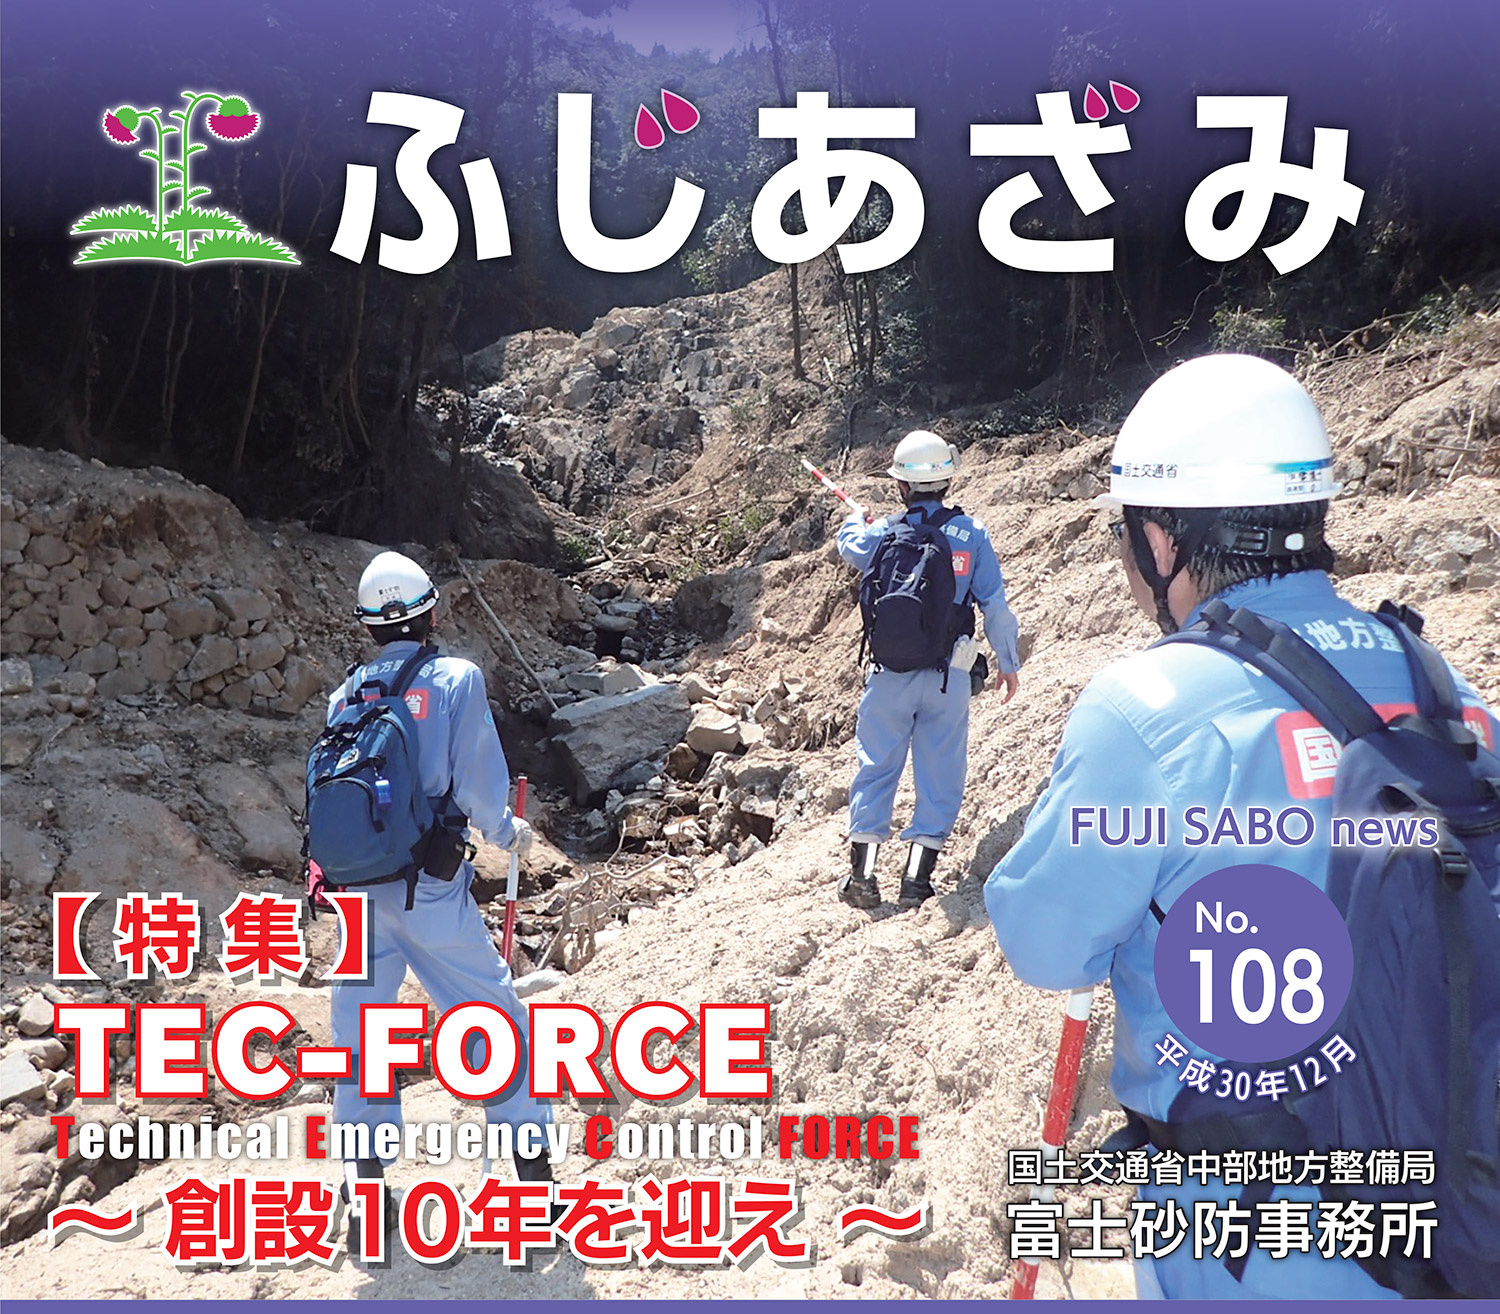 【 特 集 】TEC-FORCE〜 創設10年を迎え 〜